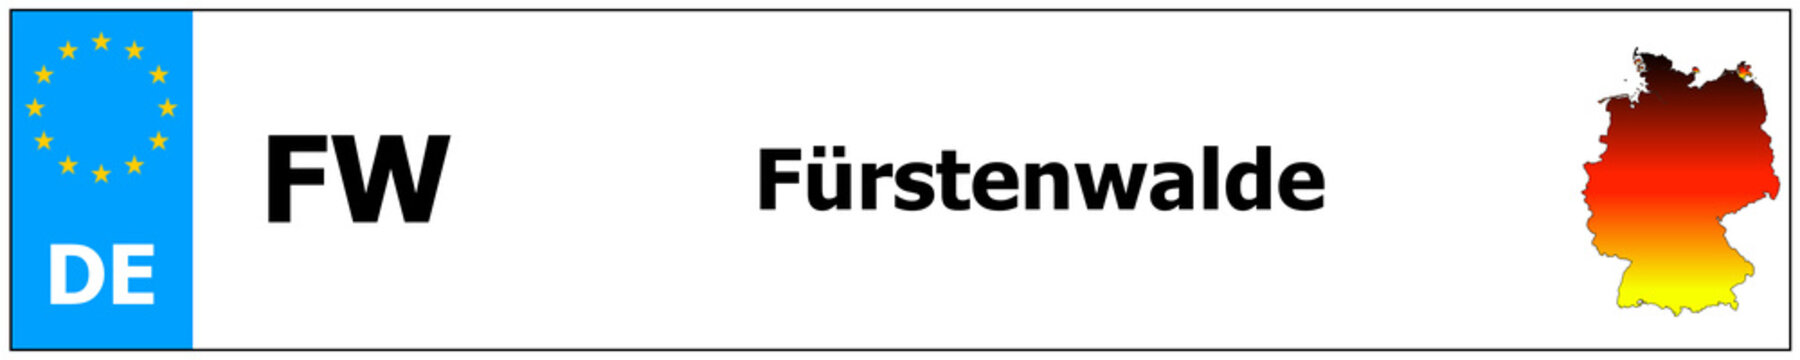 Fürstenwalde car licence plate sticker name and map of Germany. Vehicle registration plates frames German number